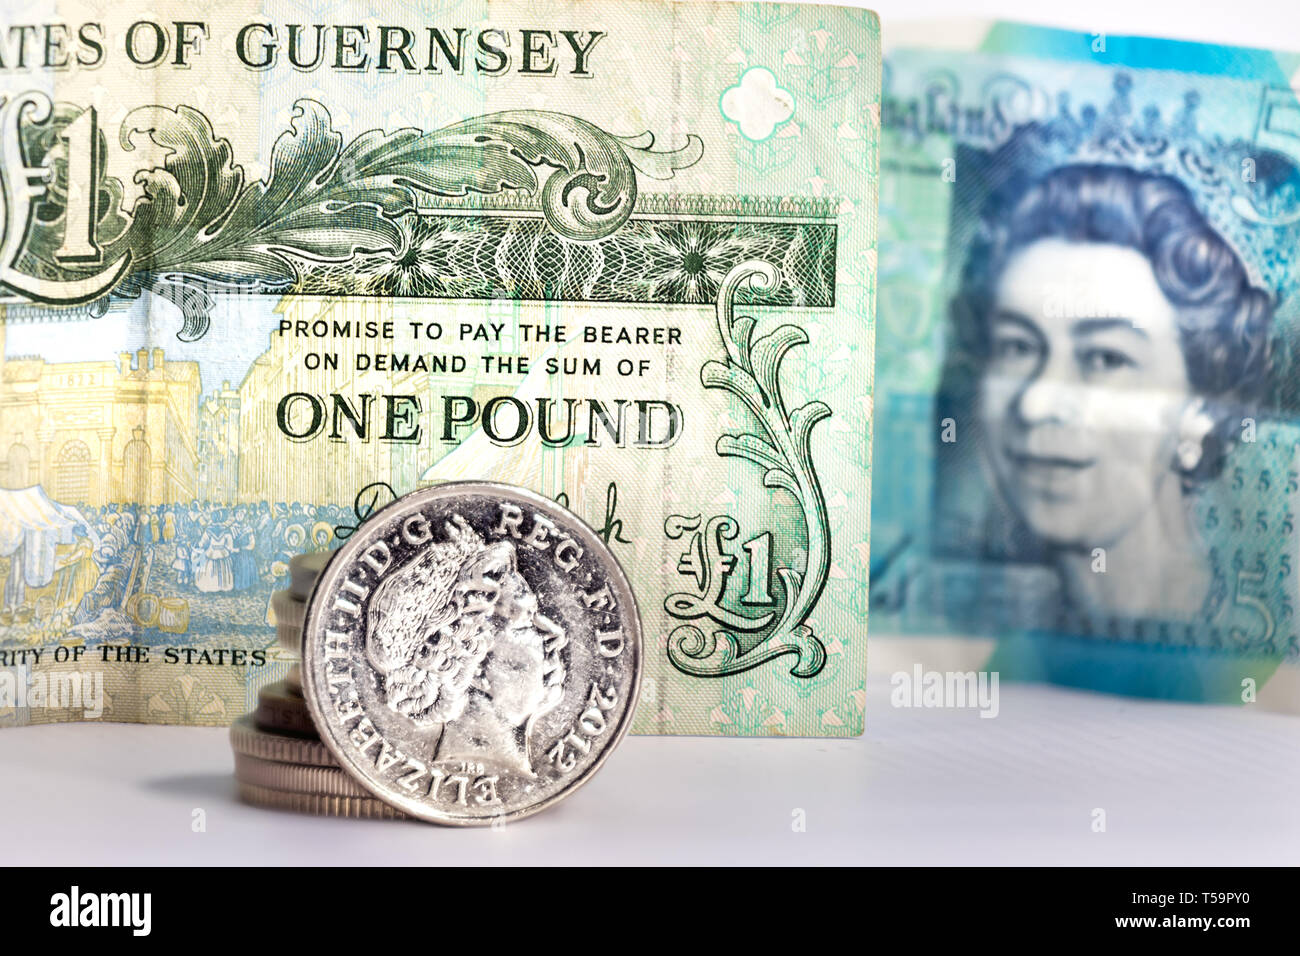 Une pièce de cinq pence avec l'image d'Elizabeth II sur un billet d'une livre de Guernesey et un flou cinq livres de UK Banque D'Images